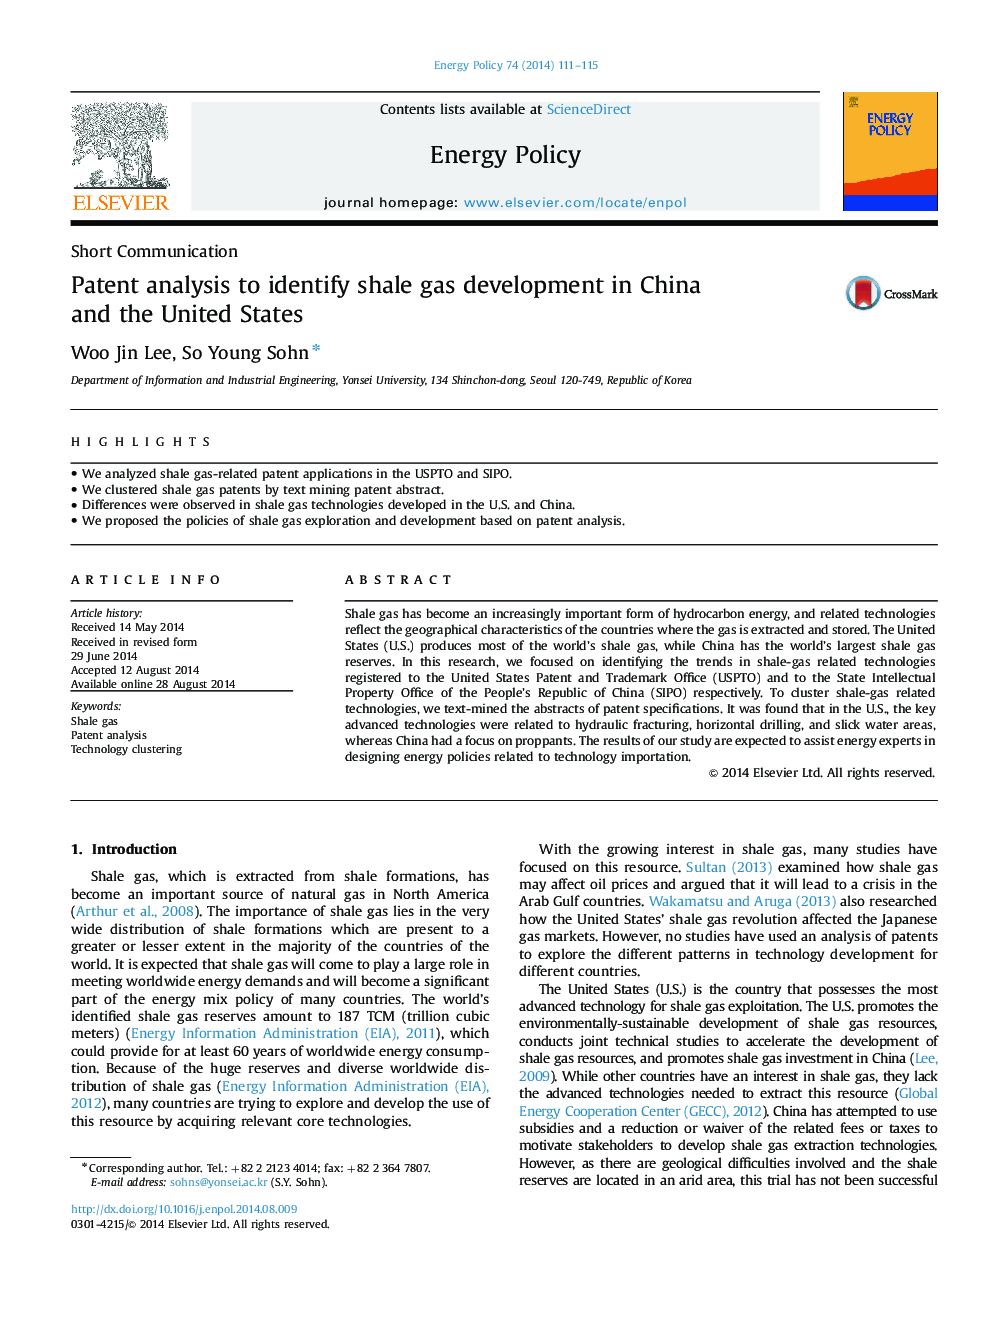 تجزیه و تحلیل ثبت اختراع برای تشخیص توسعه گاز شیل در چین و ایالات متحده 